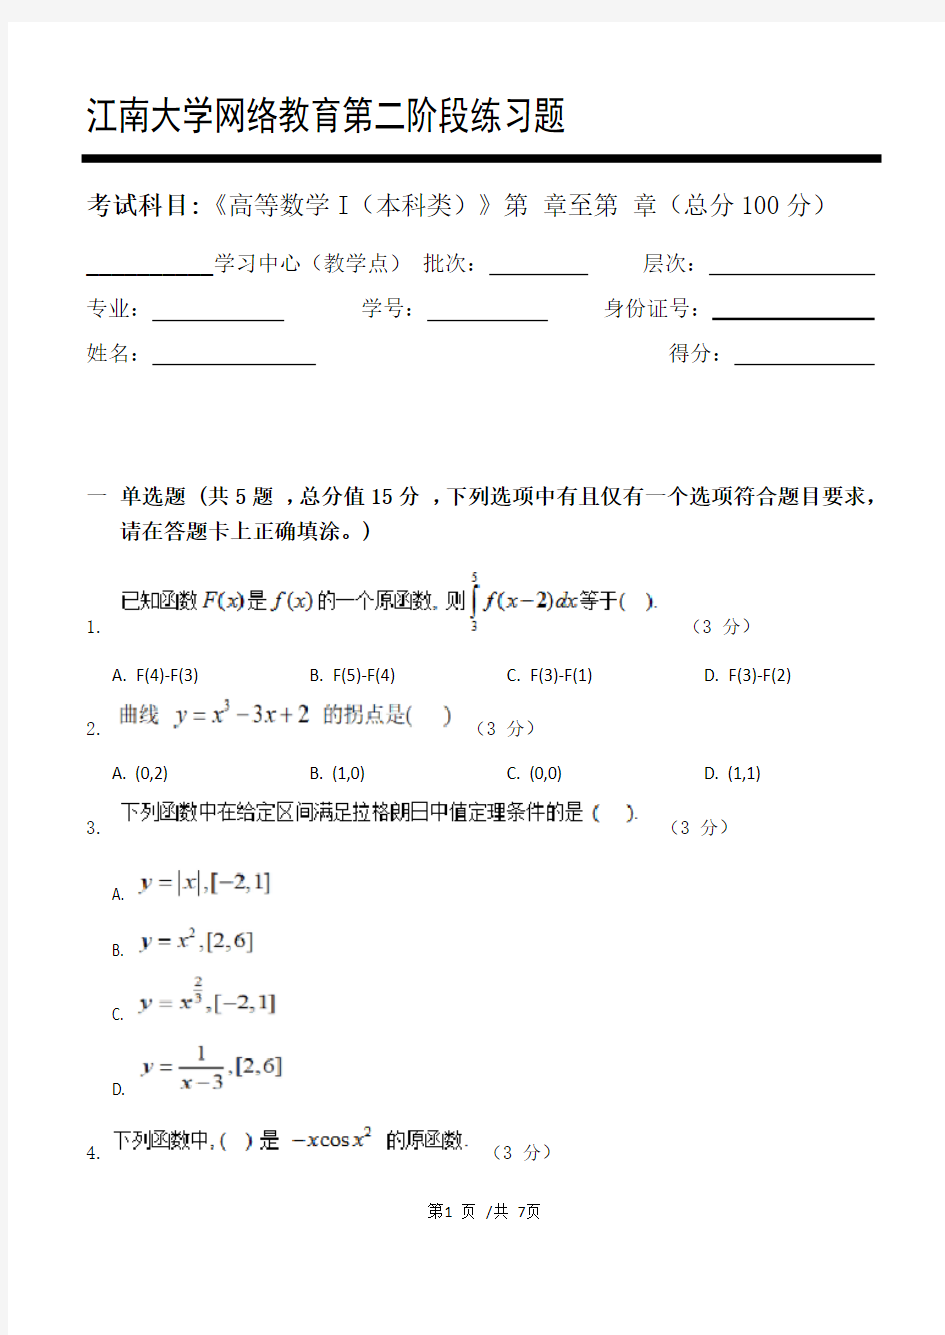 高等数学I(本科类)第2阶段练习题  江南大学  考试题库及答案  一科共有三个阶段,这是其中一个阶段。